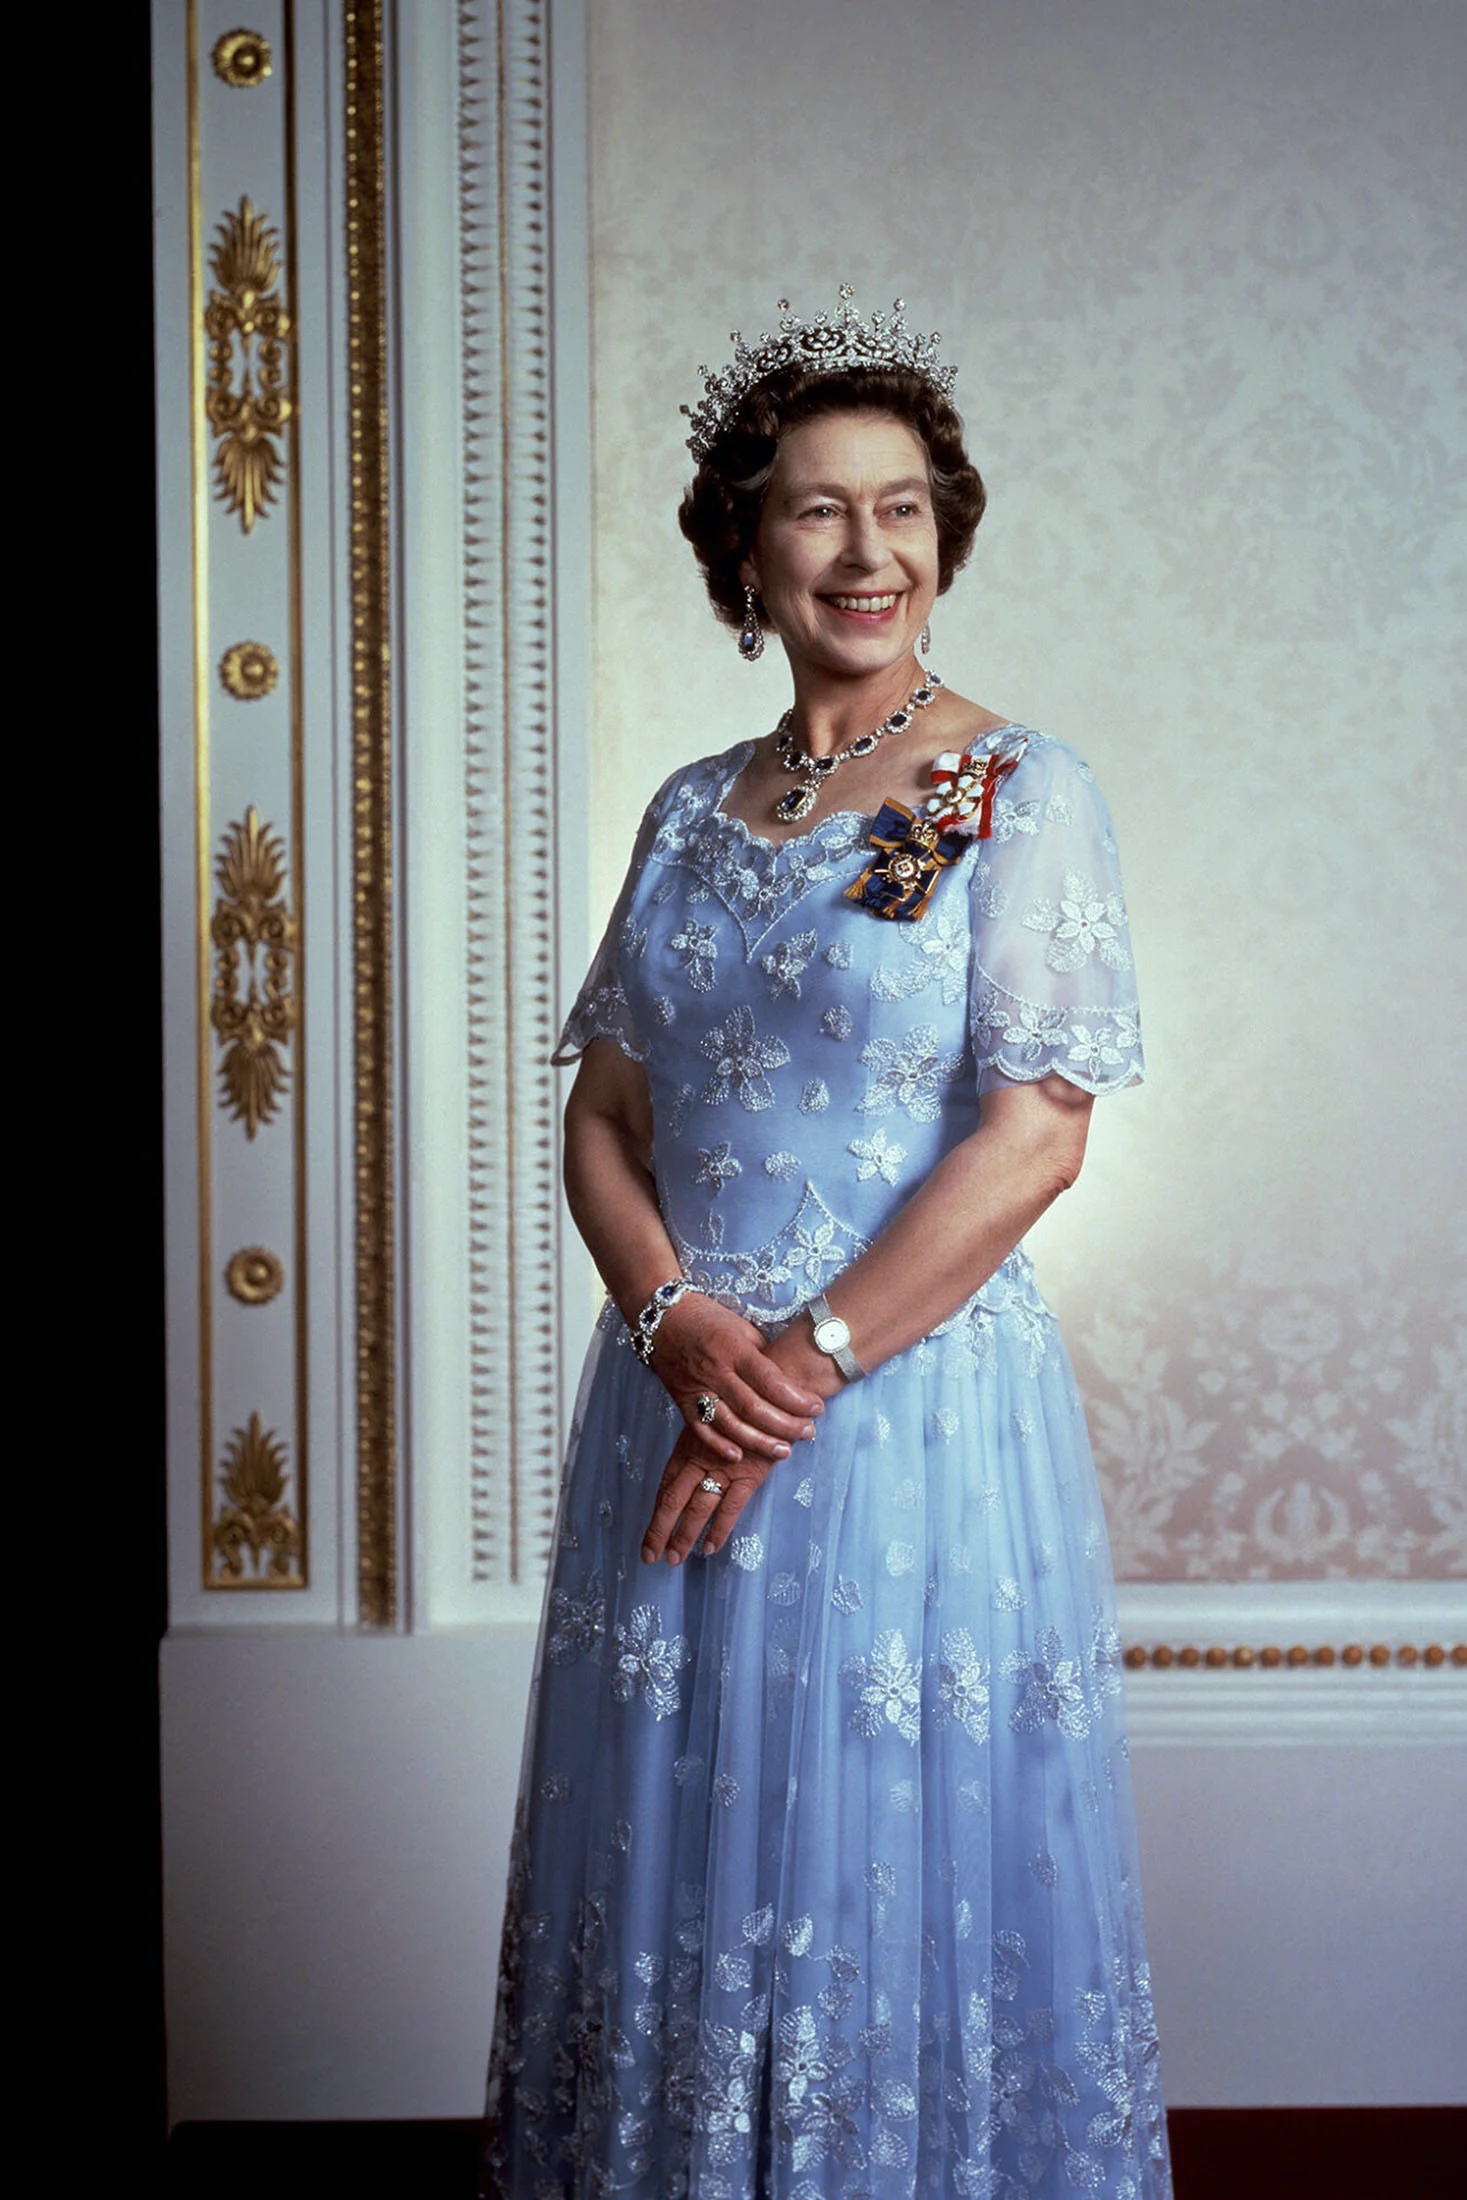 イギリスのエリザベス2世女王陛下を偲ぶ時計コレクションの数々 - Hodinkee Japan （ホディンキー 日本版）